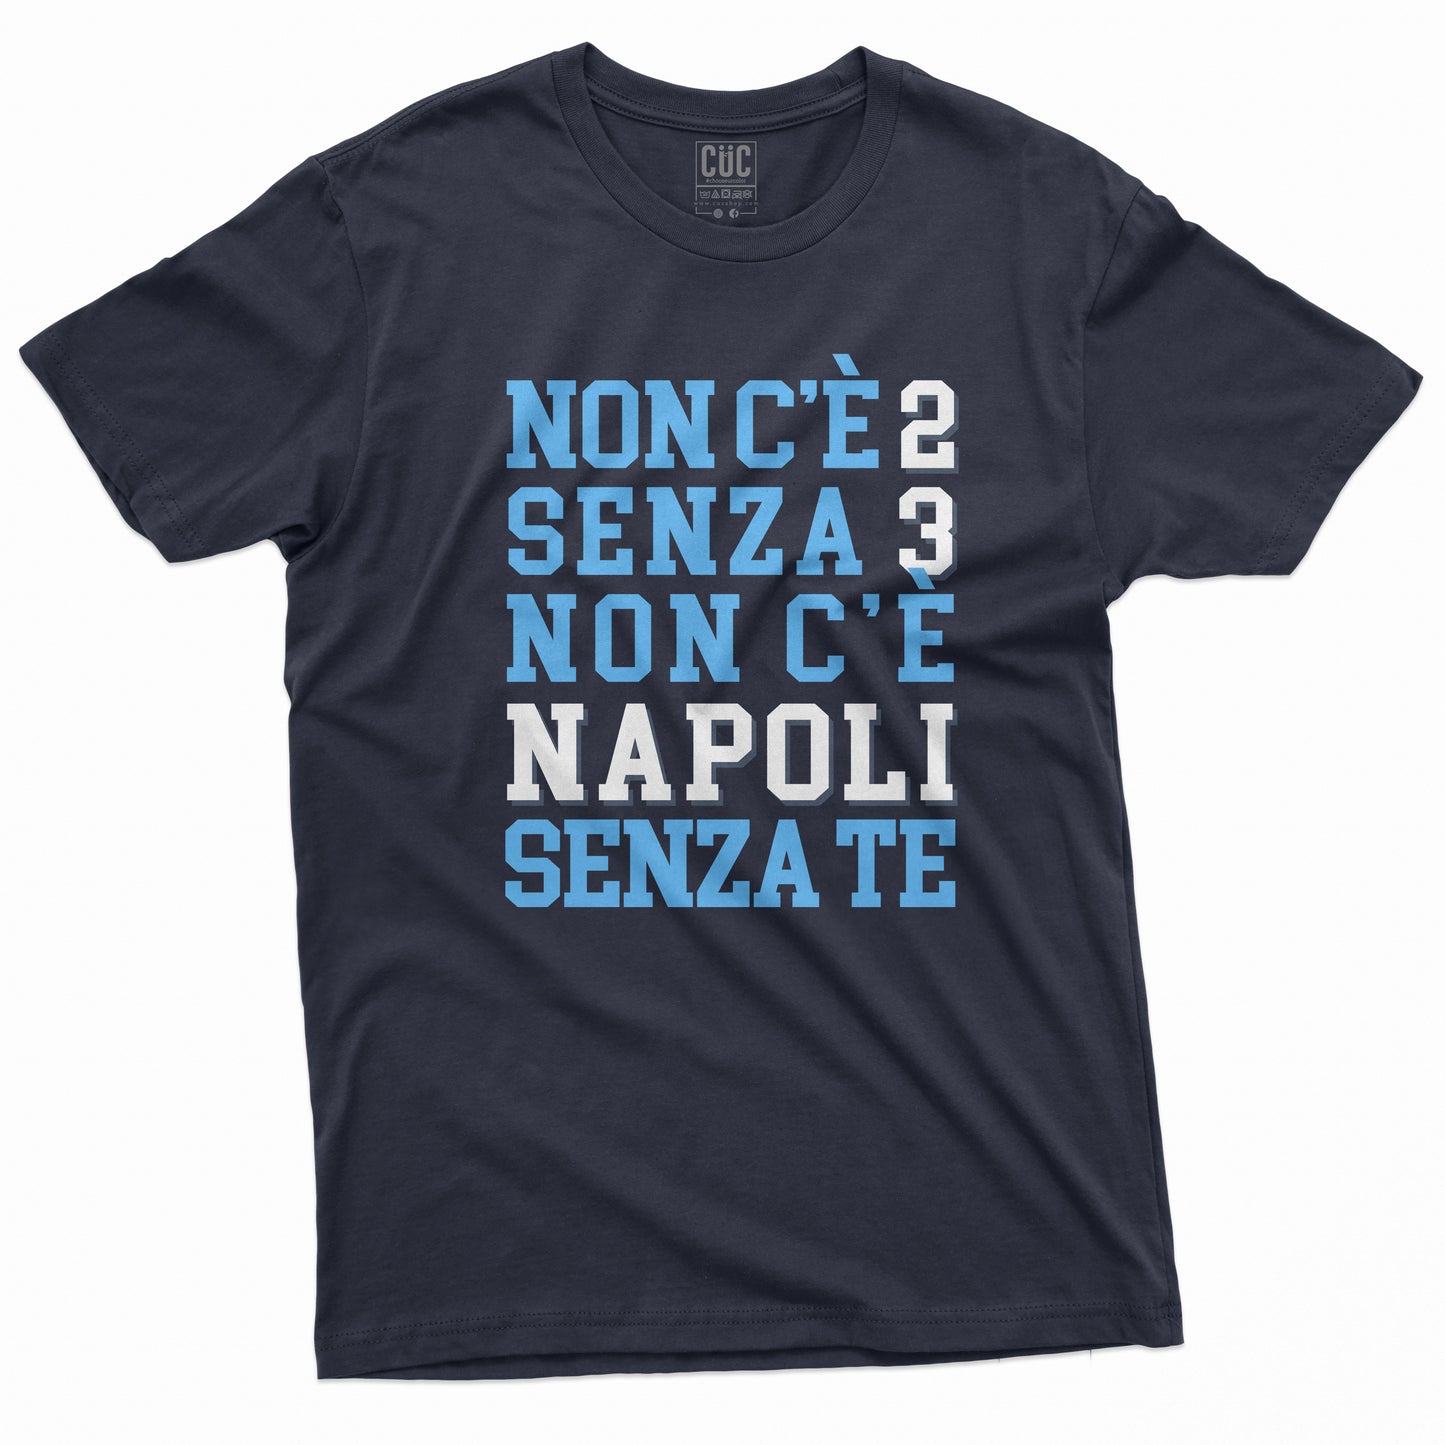 CUC T-Shirt NAPOLI - Non c'è 2 senza 3 - Campioni d'Italia - Calcio  #chooseurcolor - CUC chooseurcolor